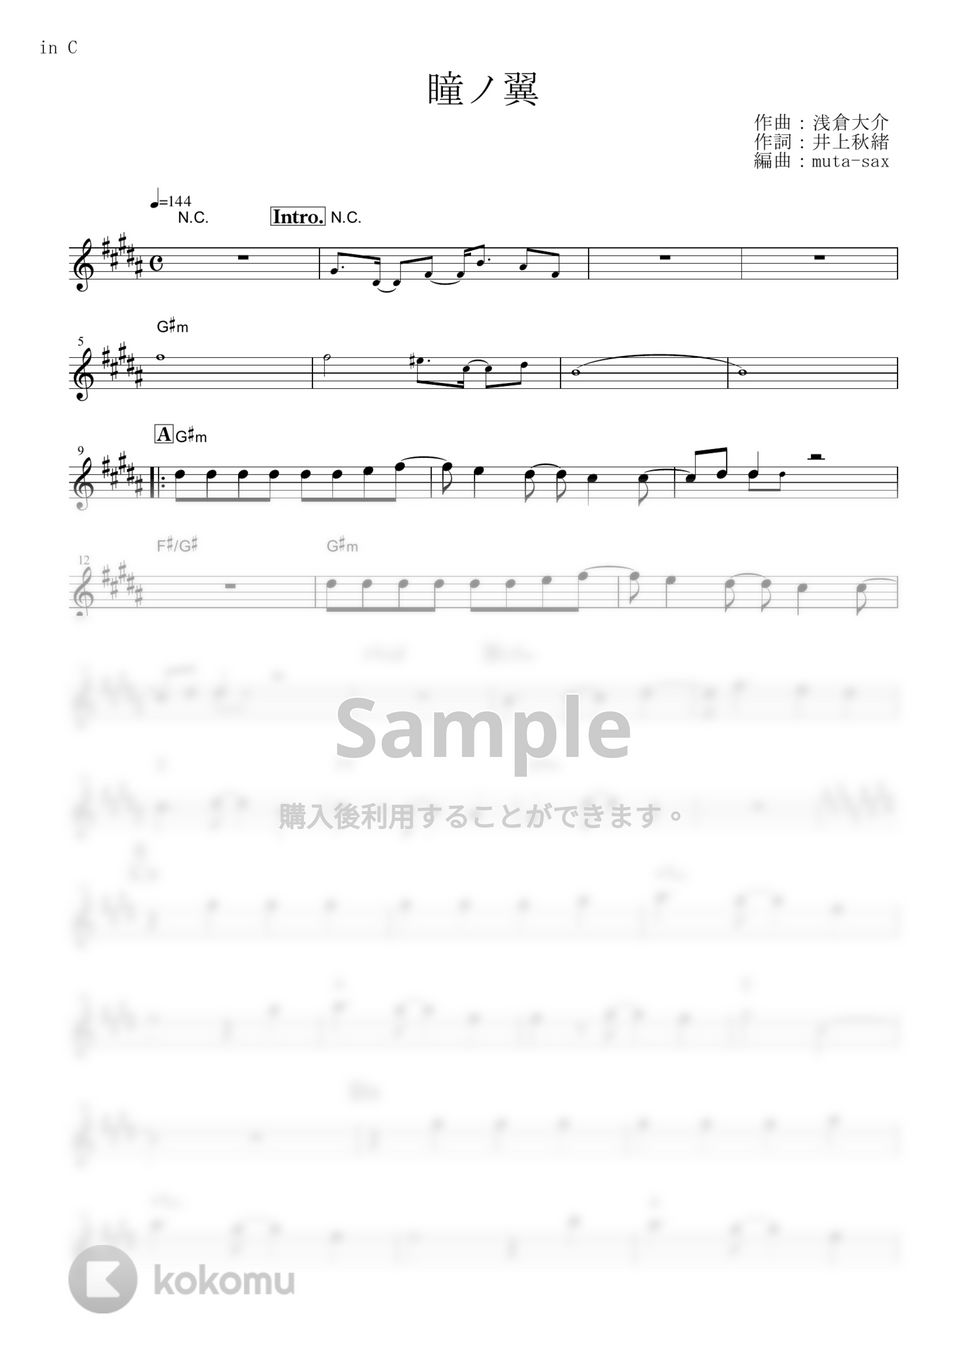 access - 瞳ノ翼 (『コードギアス 反逆のルルーシュ』 / in C) by muta-sax